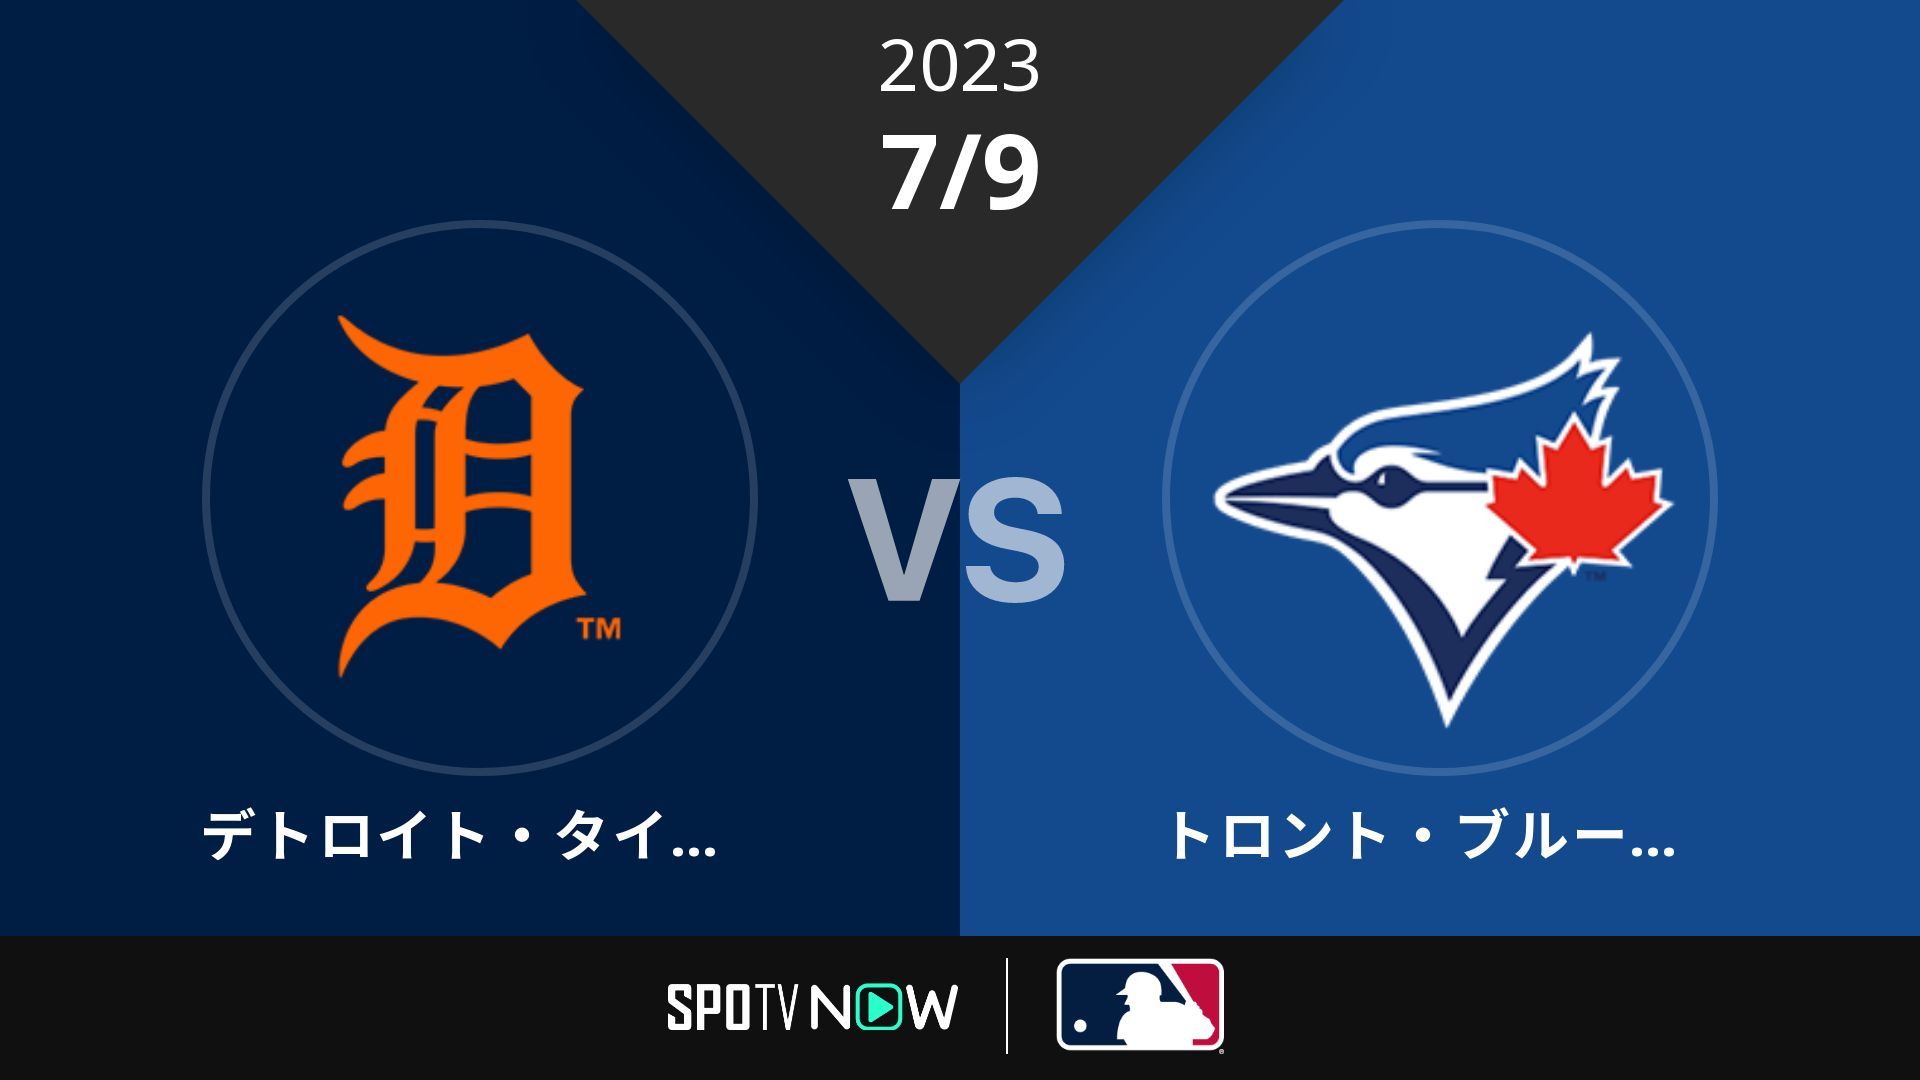 2023/7/9 タイガース vs ブルージェイズ [MLB]